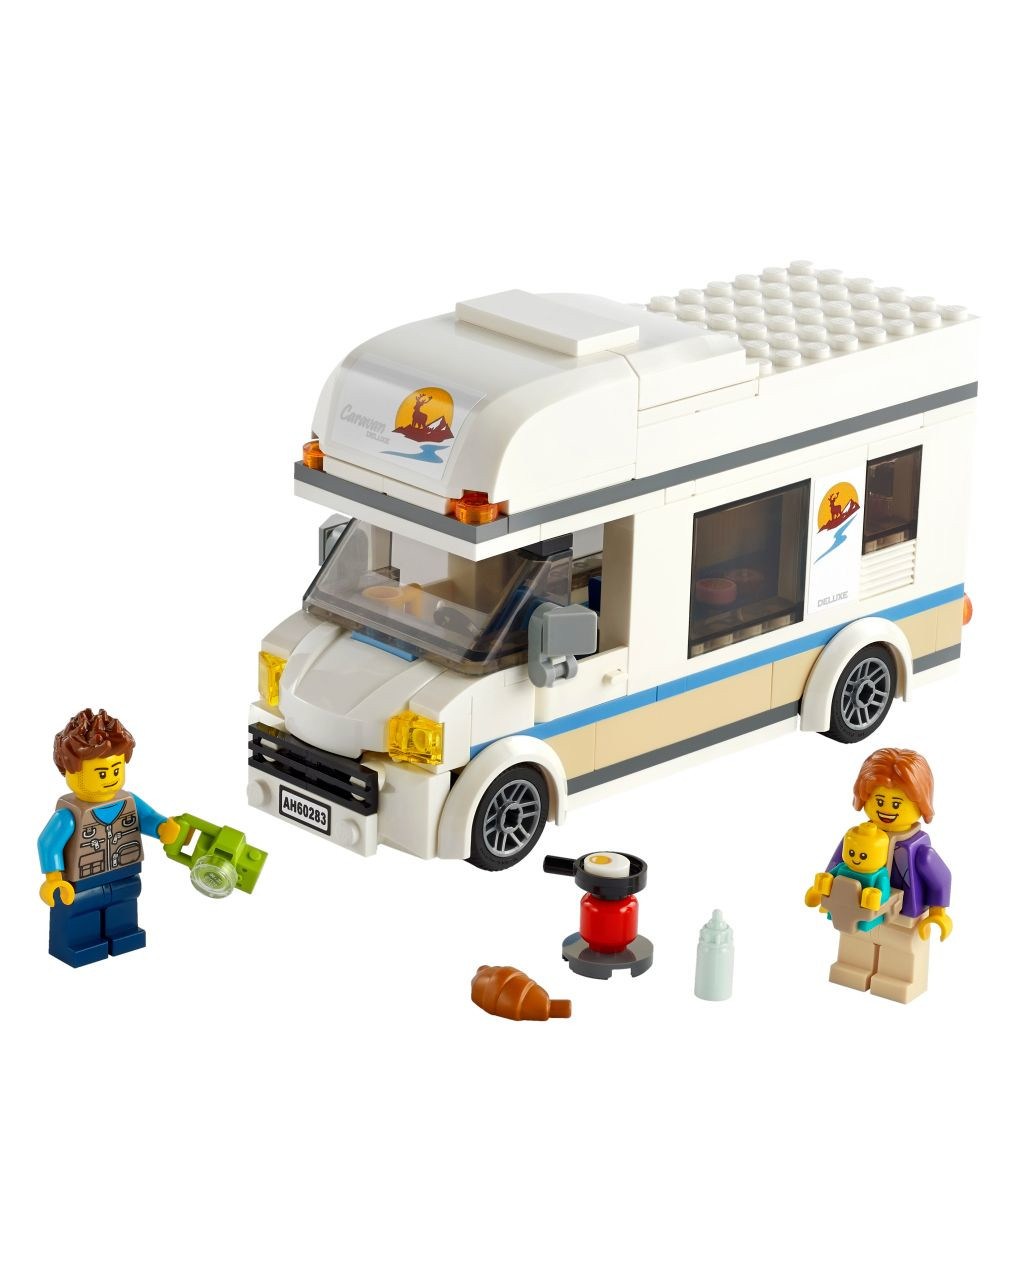 ótimos veículos da cidade de lego - campista de férias - 60283 - LEGO